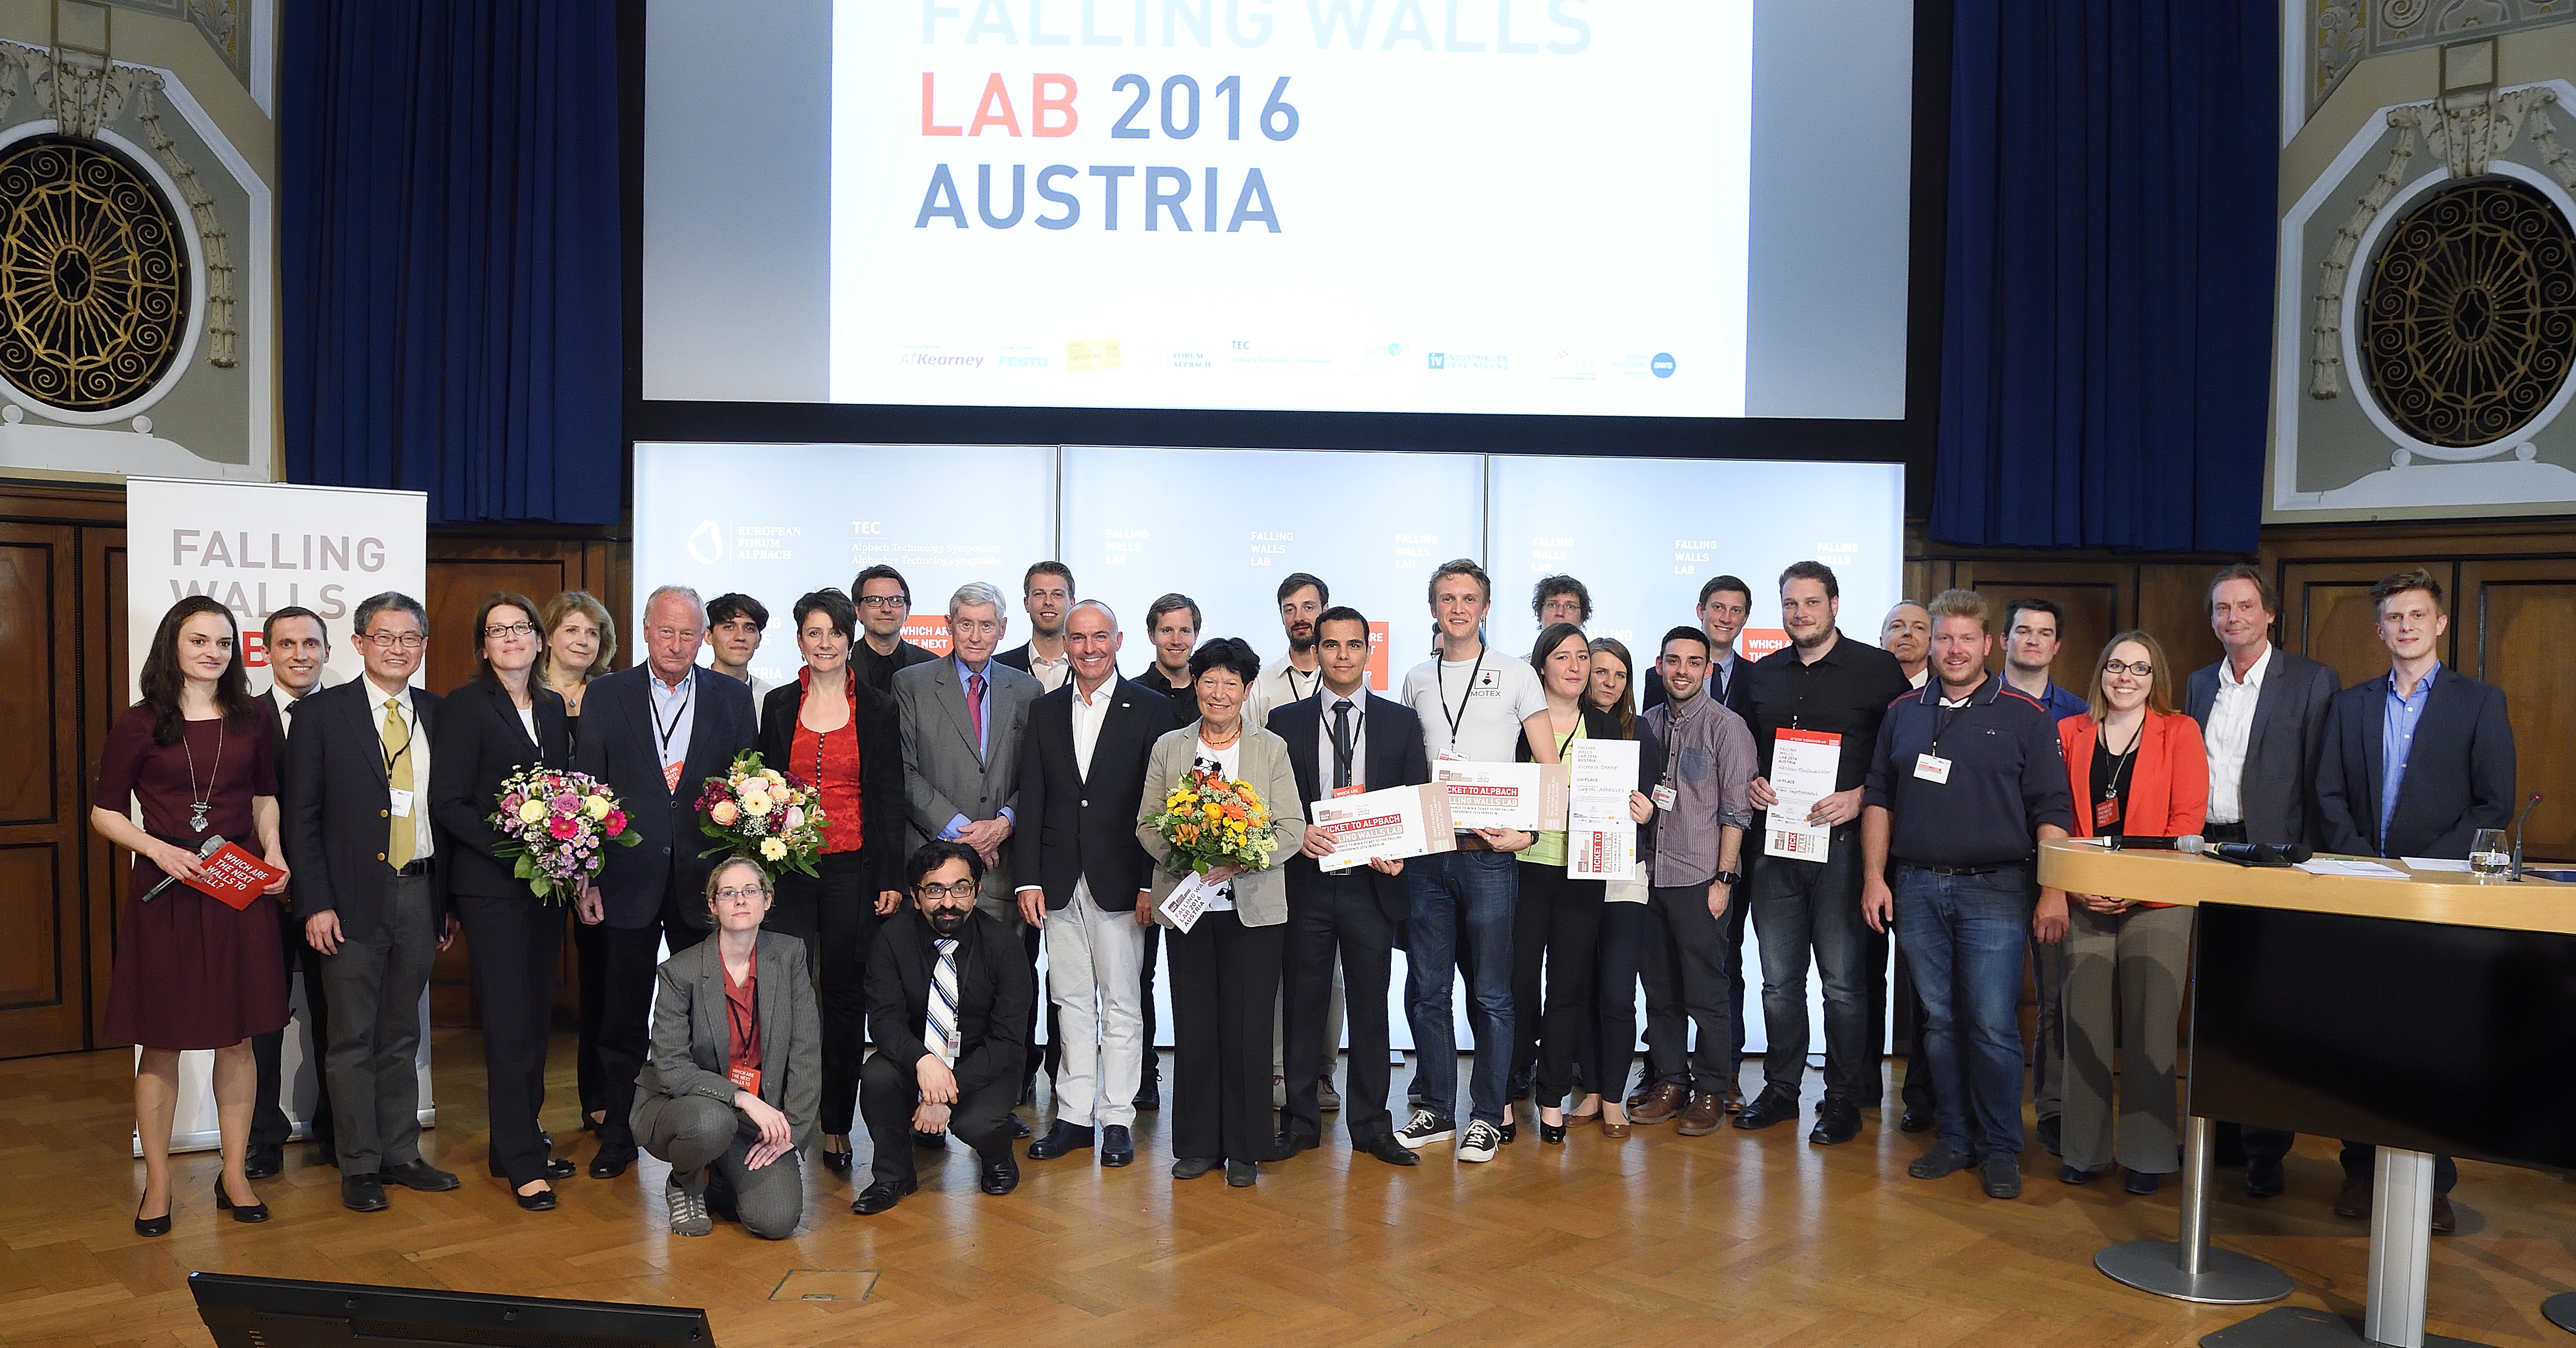 Gruppenfoto mit den TeilnehmerInnen des Falling Walls Lab Austria 2016 sowie der Jury, Technologieminister Gerald Klug und dem Vorsitzenden des Forschungsrates, Hannes Androsch. © AIT / Johannes Zinner